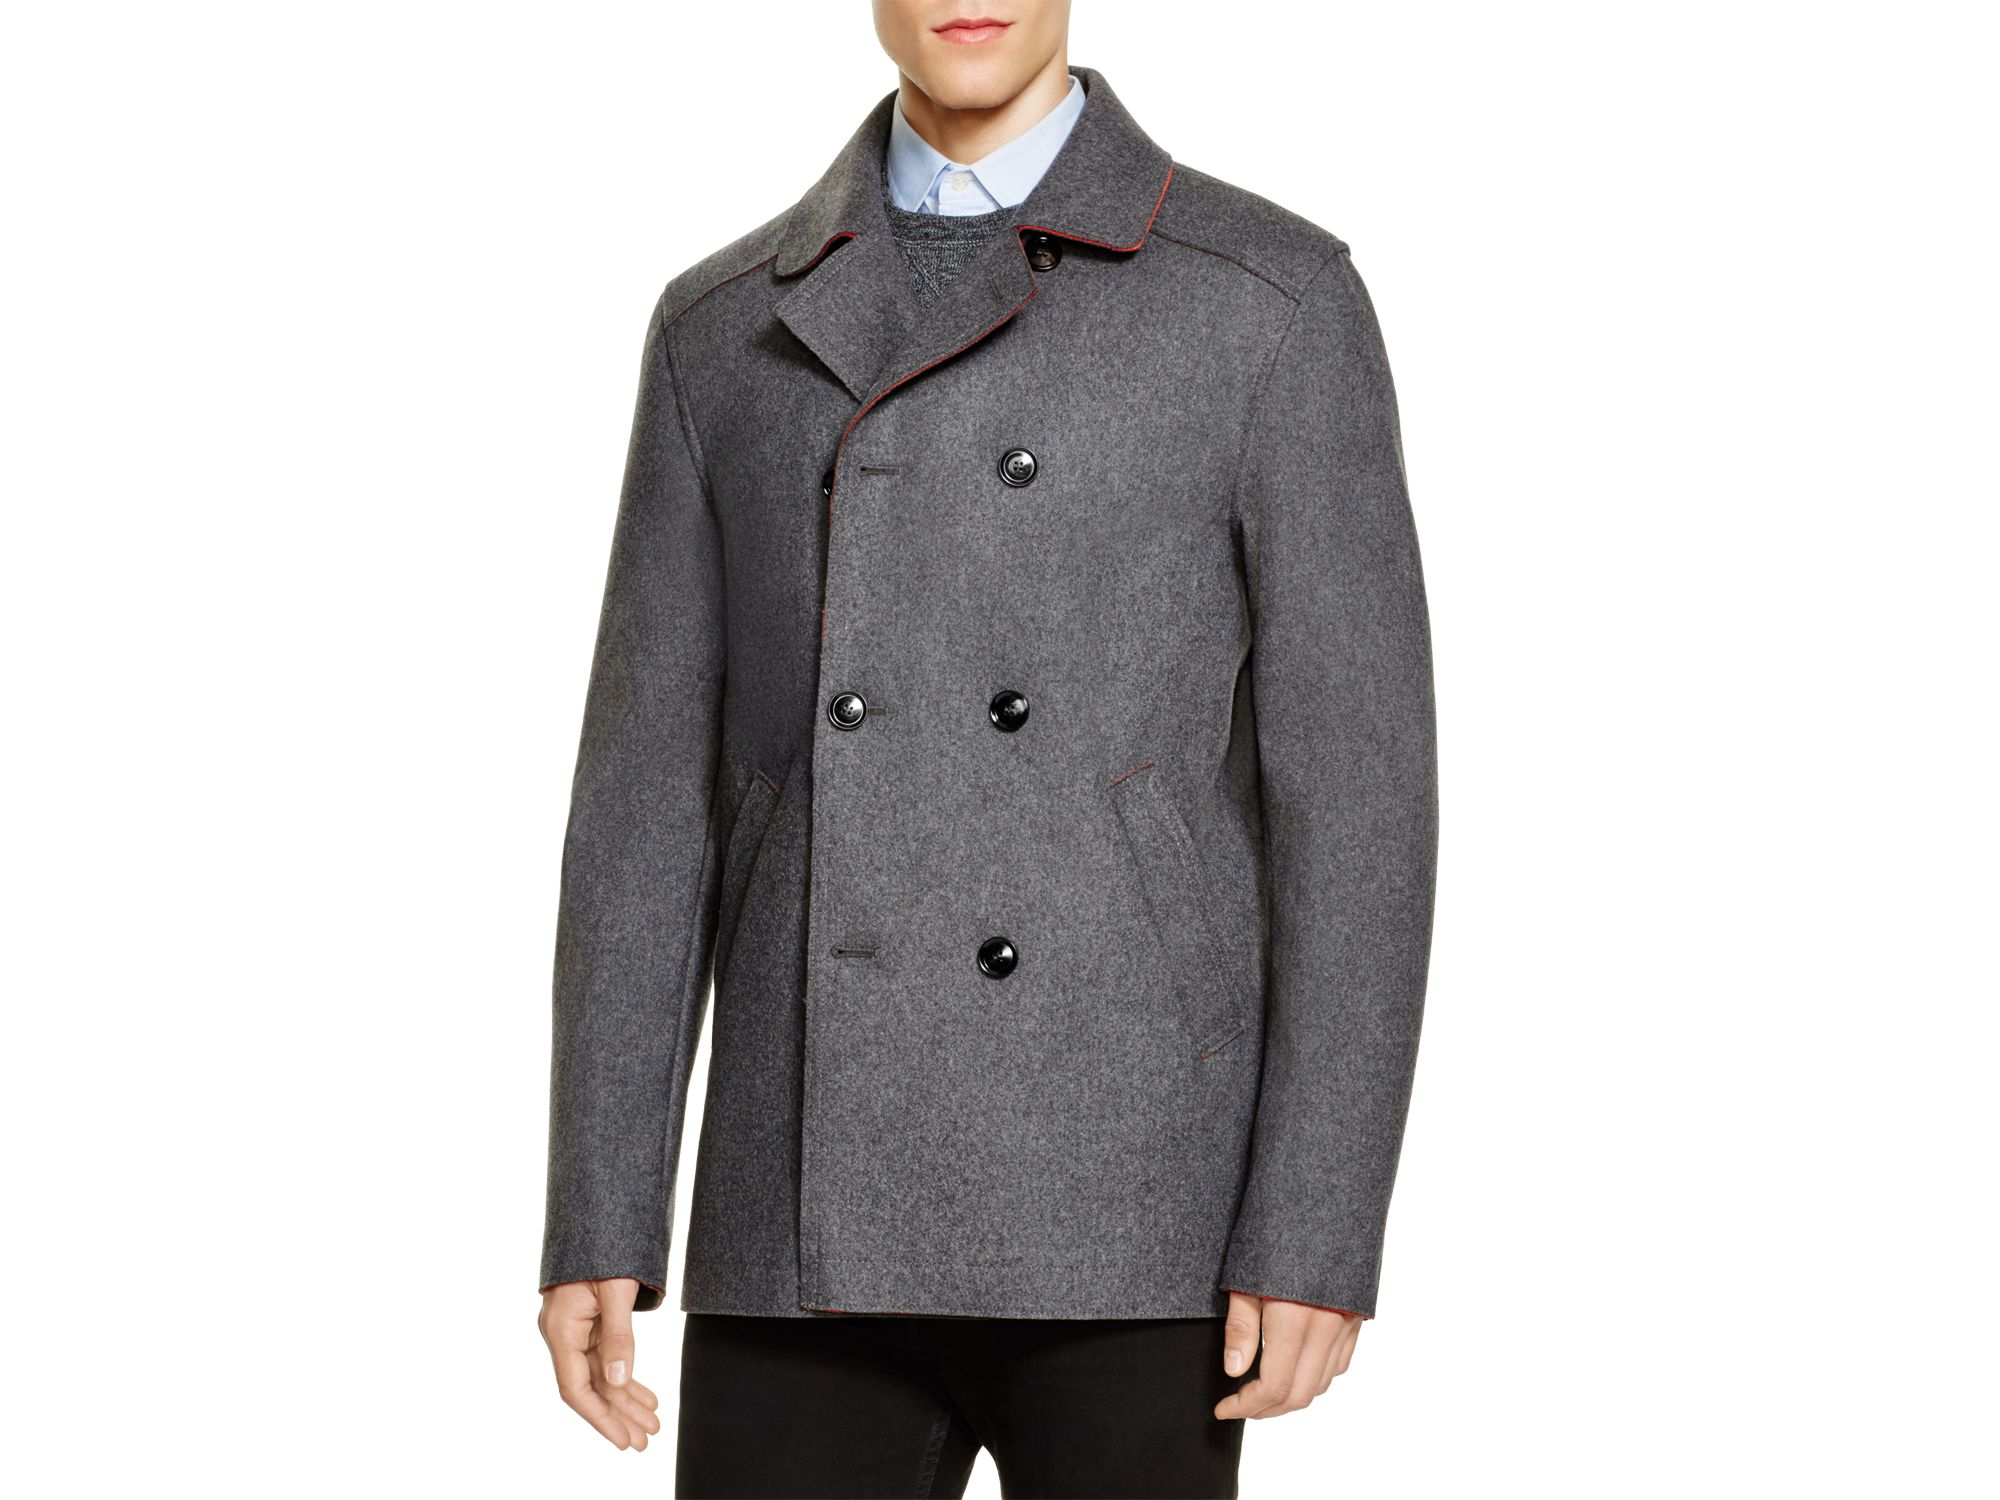 Lyst - Hardy Amies Wool Blend Short Overcoat - Bloomingdale's Exclusive ...